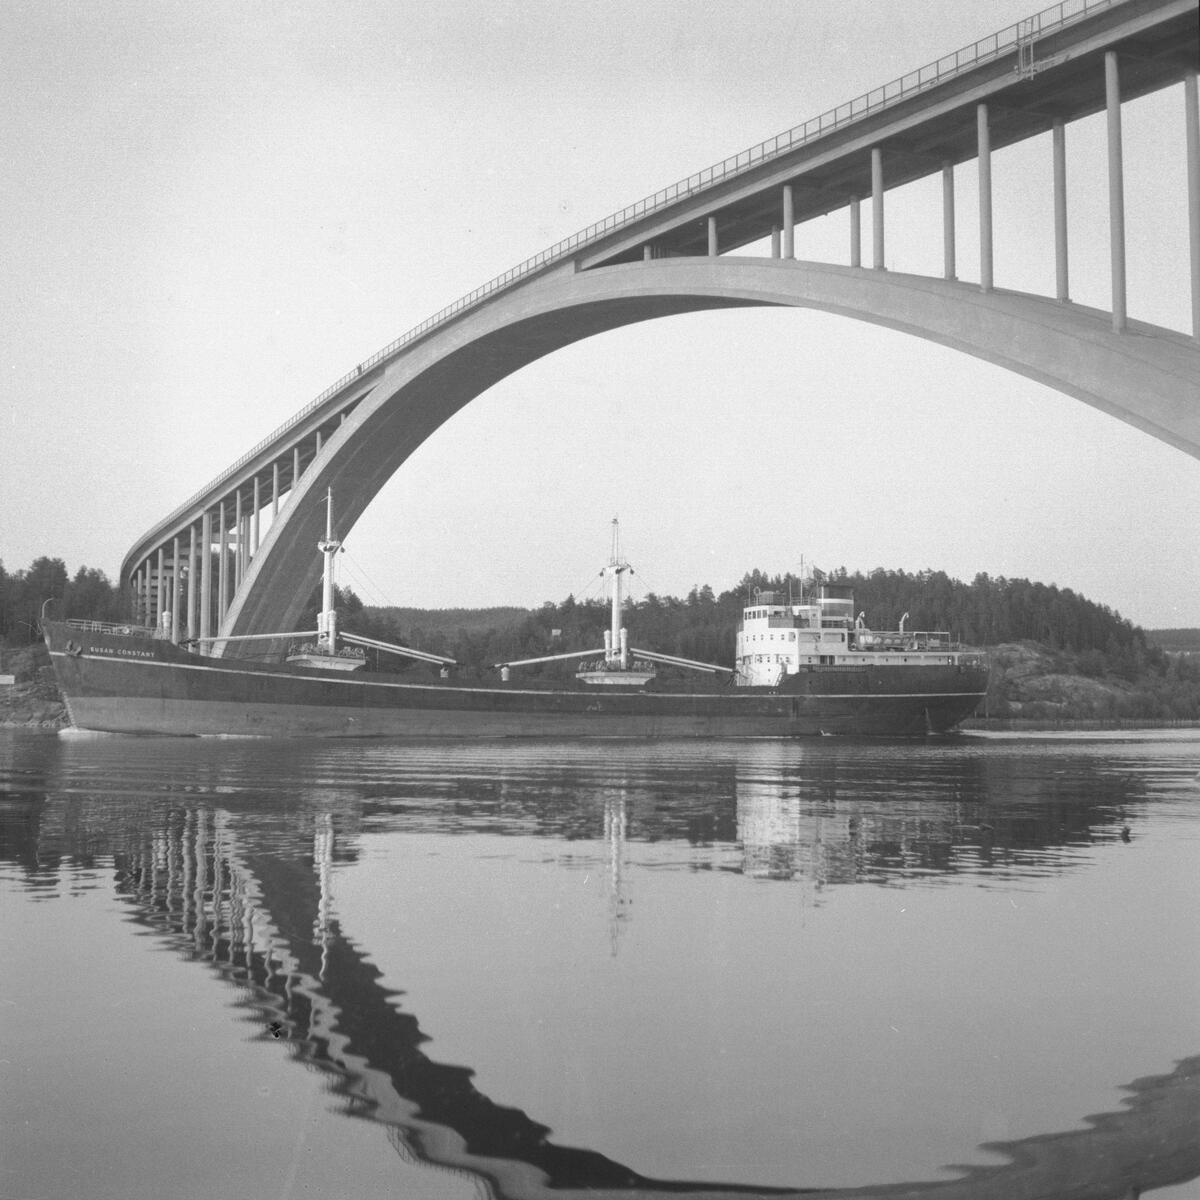 Fartyget Susan Constant vid Sandöbron

